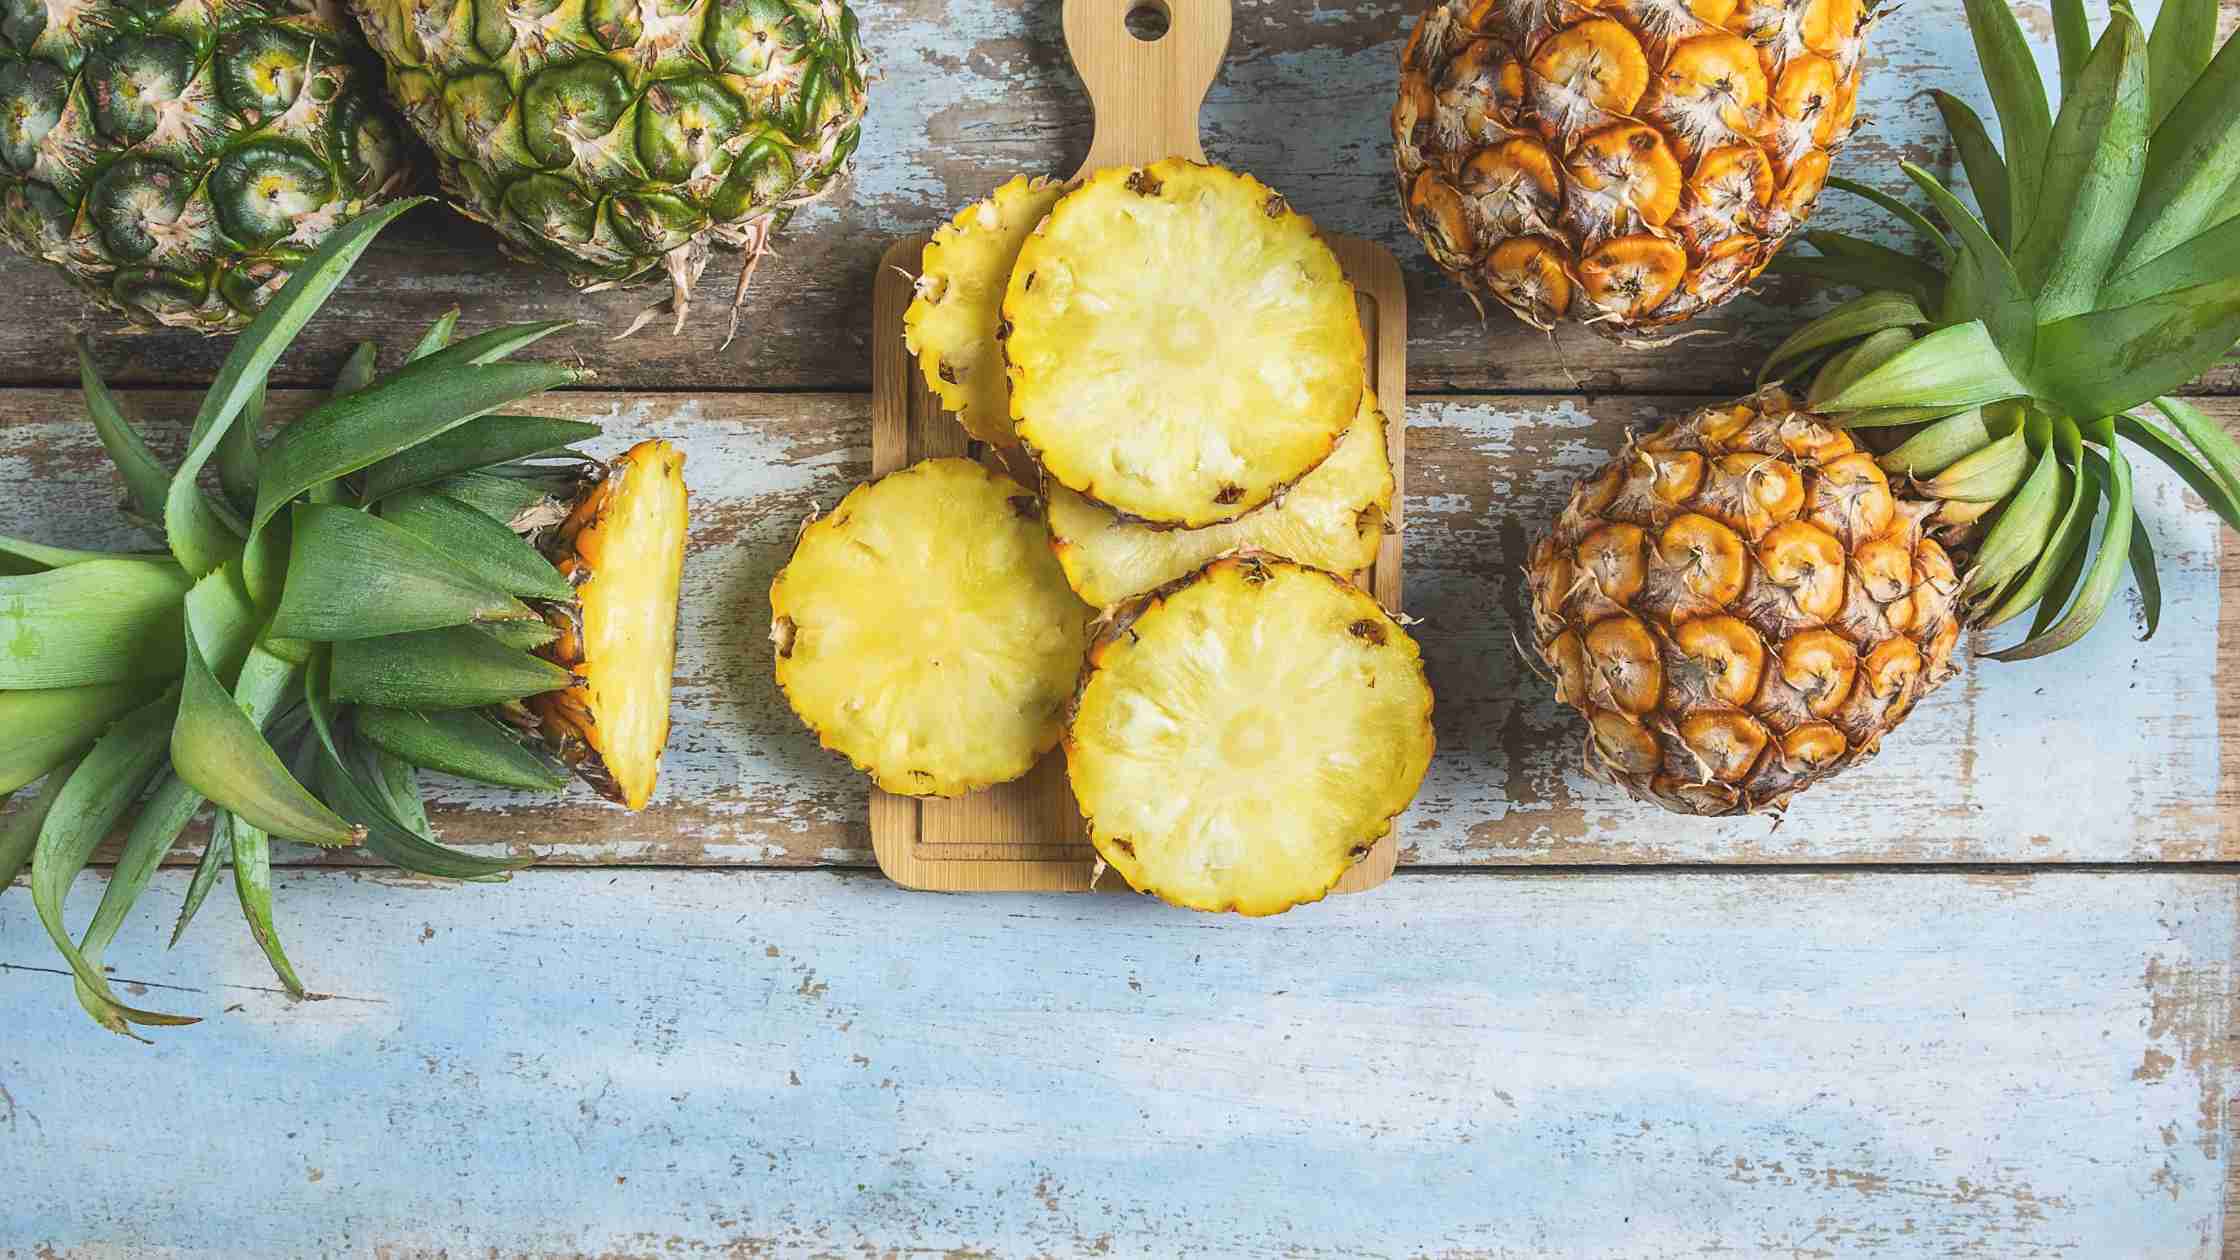 Eine saftige Ananas, reich an Vitamin C und dem Enzym Bromelain. Dieses Enzym kann beim Verzehr helfen, die Verdauung zu unterstützen und Entzündungen im Körper zu reduzieren.